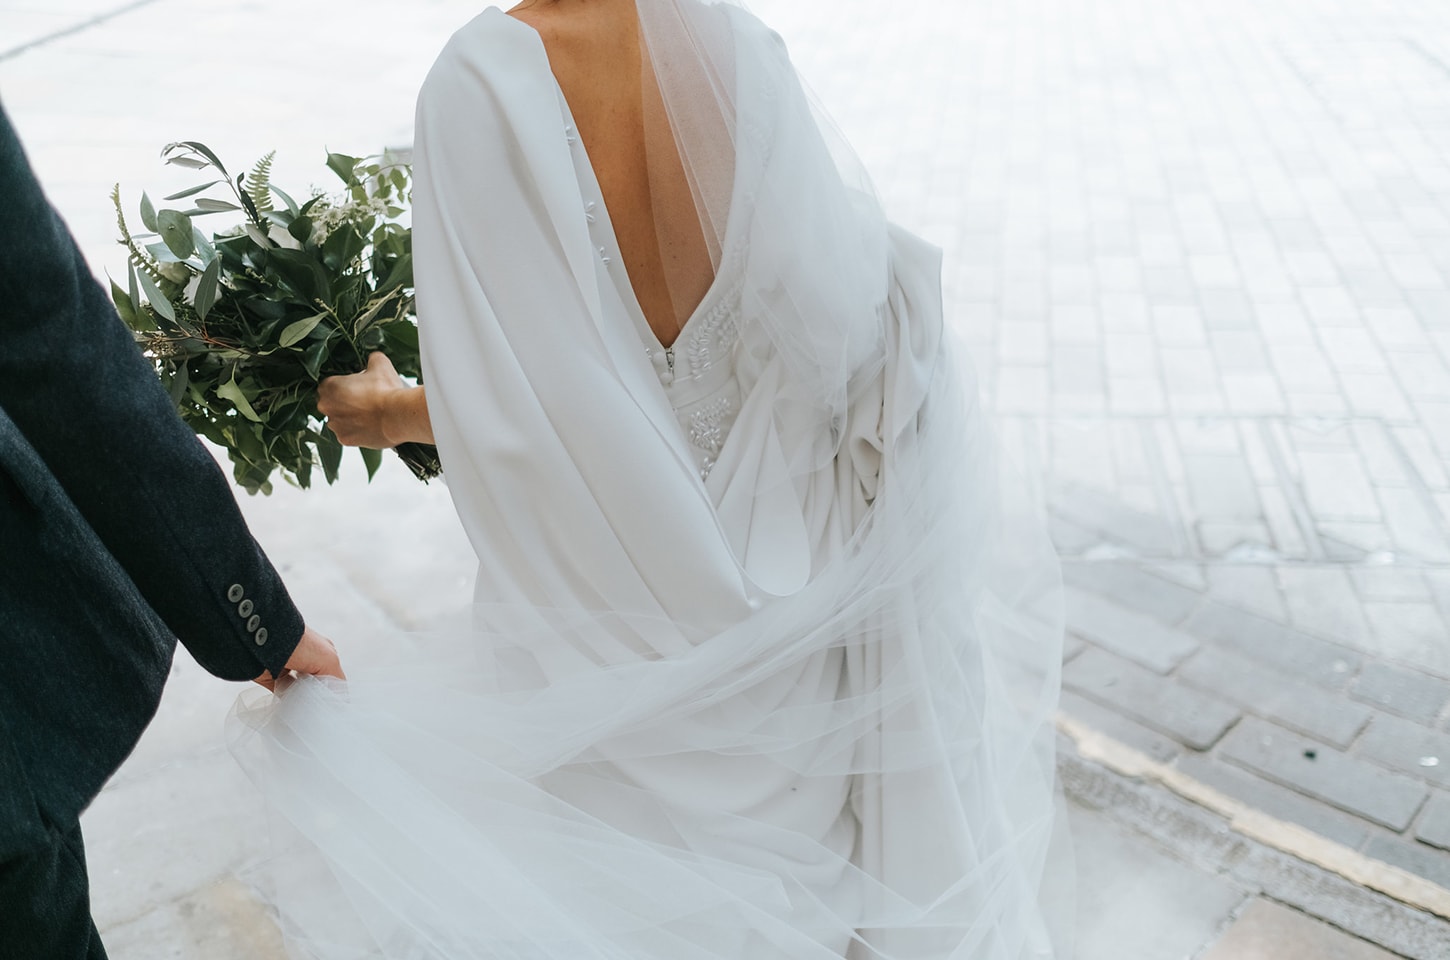 Choosing a Bra and Wedding Dress Following A Mastectomy